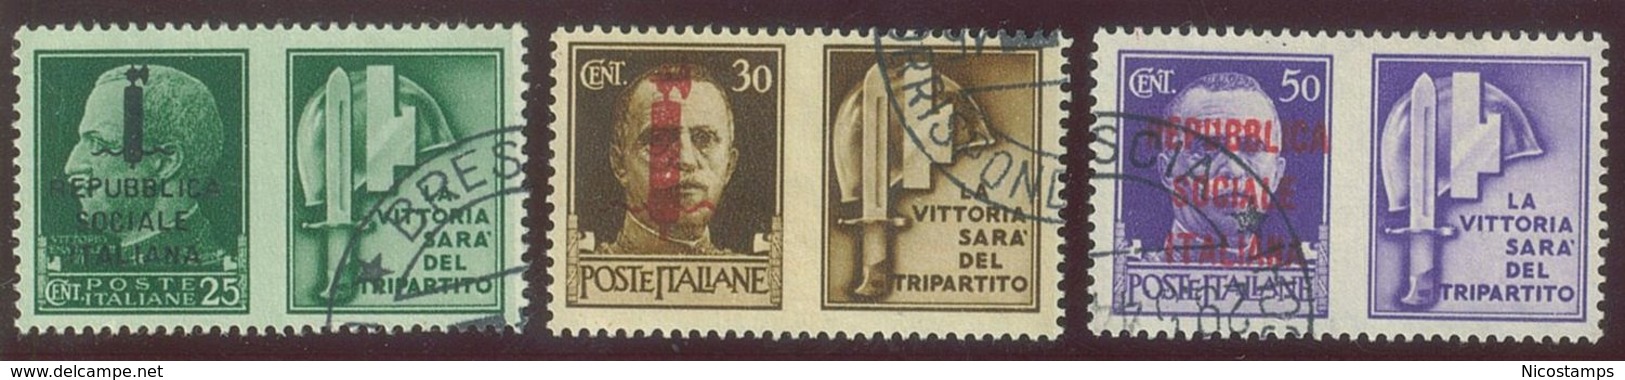 ITALIA REPUBBLICA SOCIALE ITALIANA (R.S.I.) SASS. P.G. 25 - 36 USATI - War Propaganda